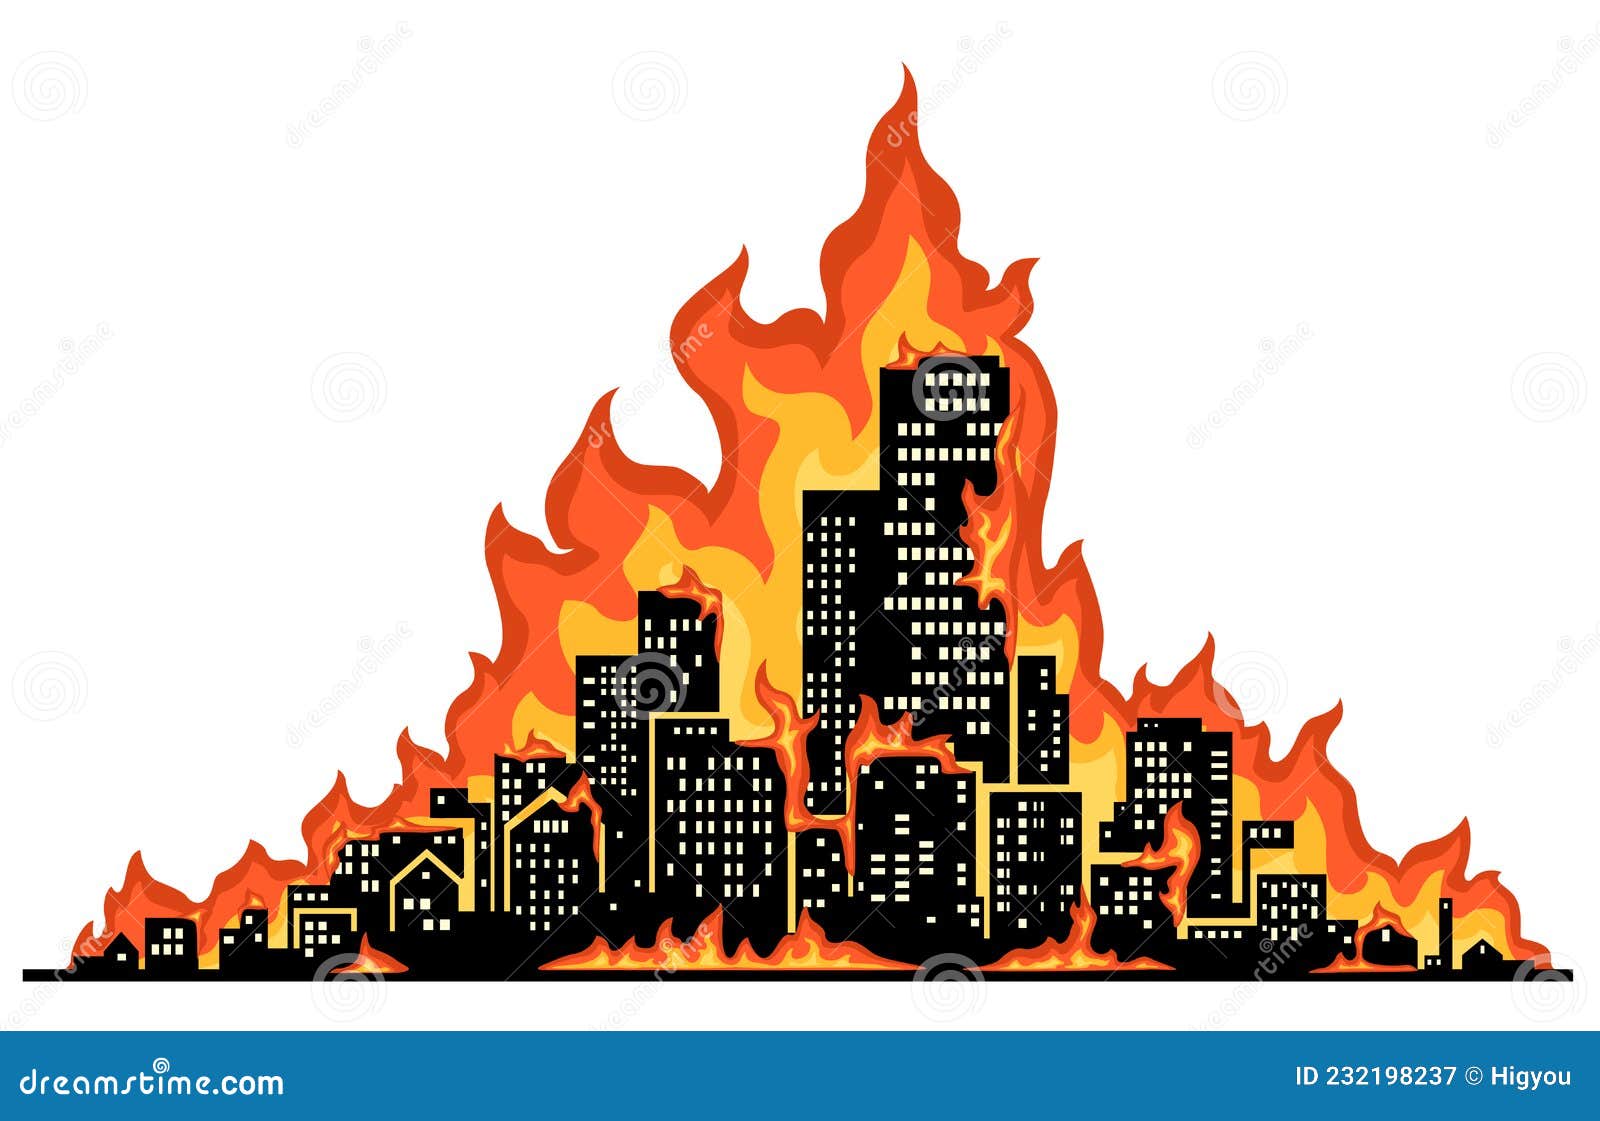 caricatura-sobre-el-incendio-en-la-ciudad-silueta-de-sombra-oscura-llamas-con-llama-roja-color-dibujos-animados-ilustraci%C3%B3n-232198237.jpg